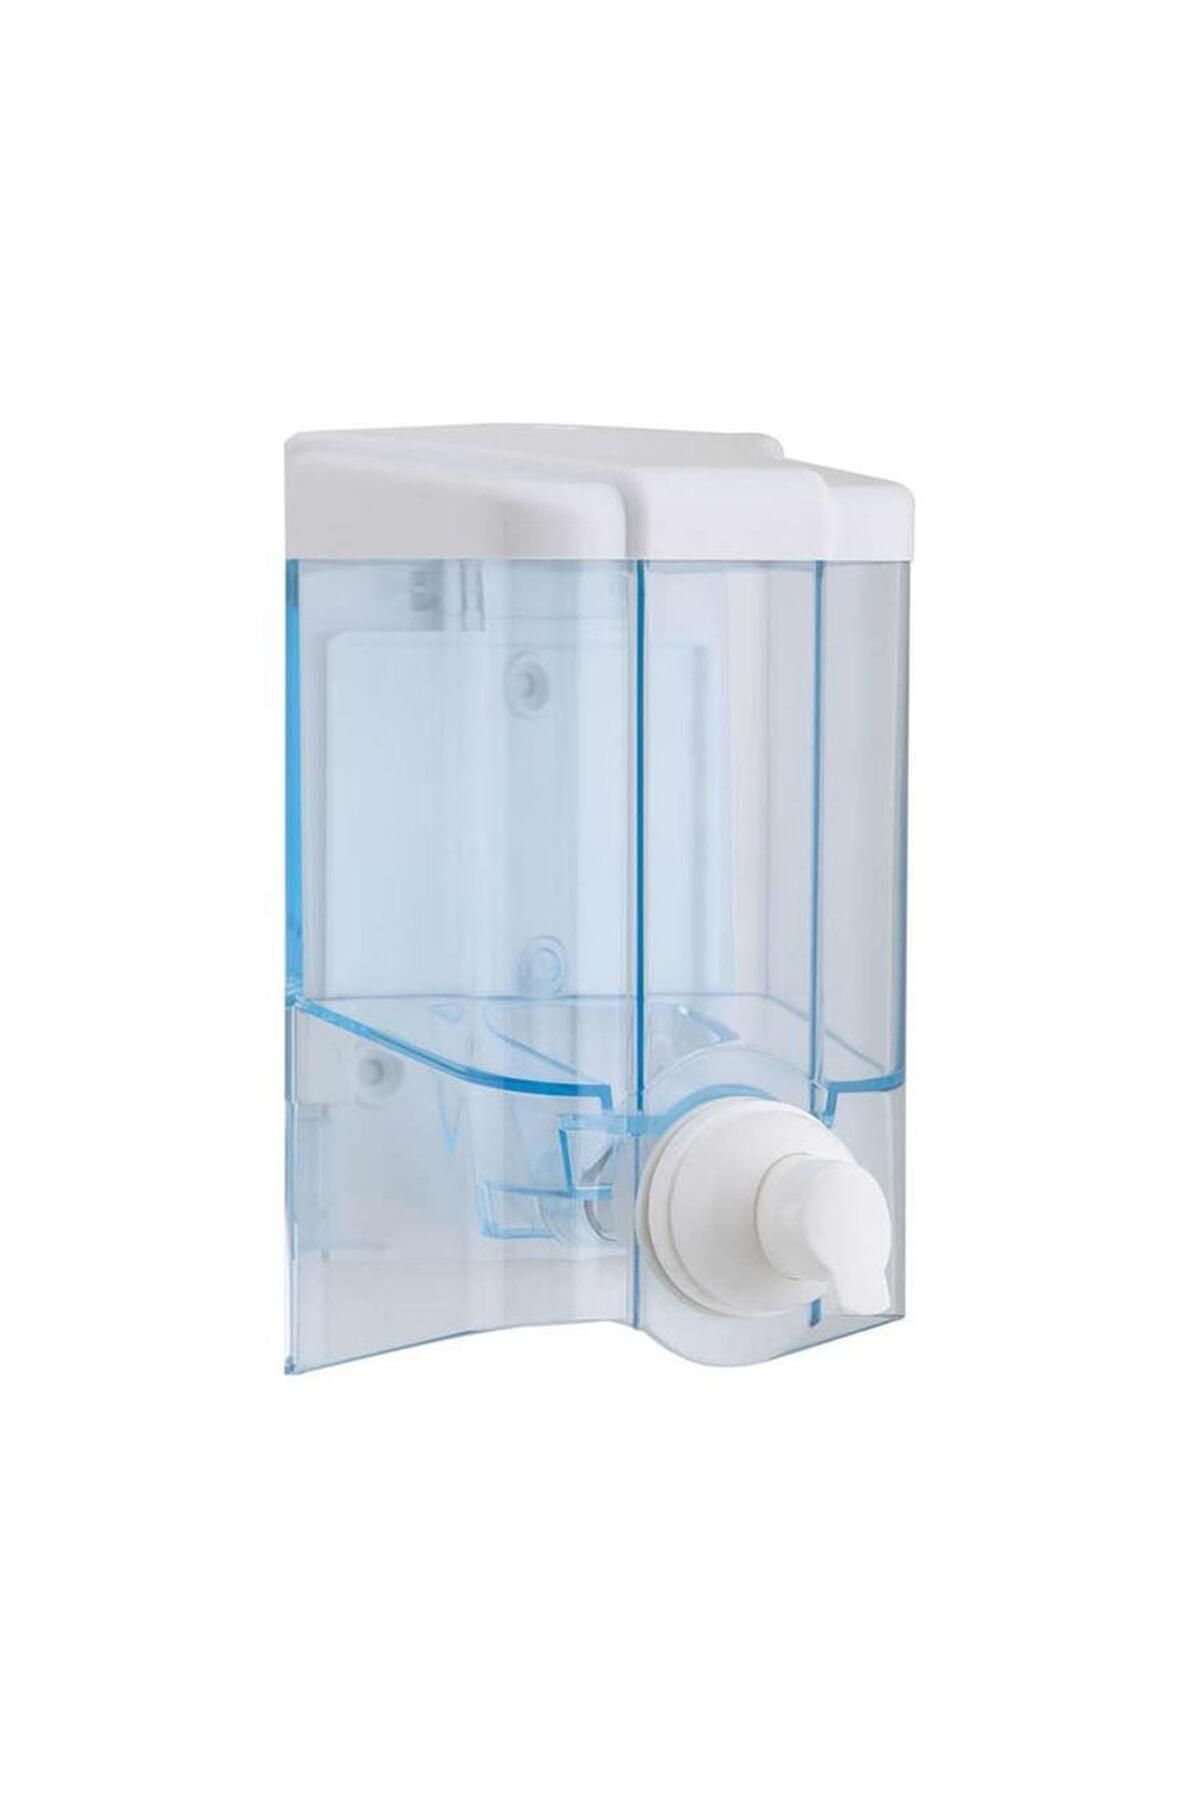 Vialli F2t 500 Gr. Hazneli Sıvı Köpük Sabun Dispenseri / Köpük Verici - Şeffaf - Plastik